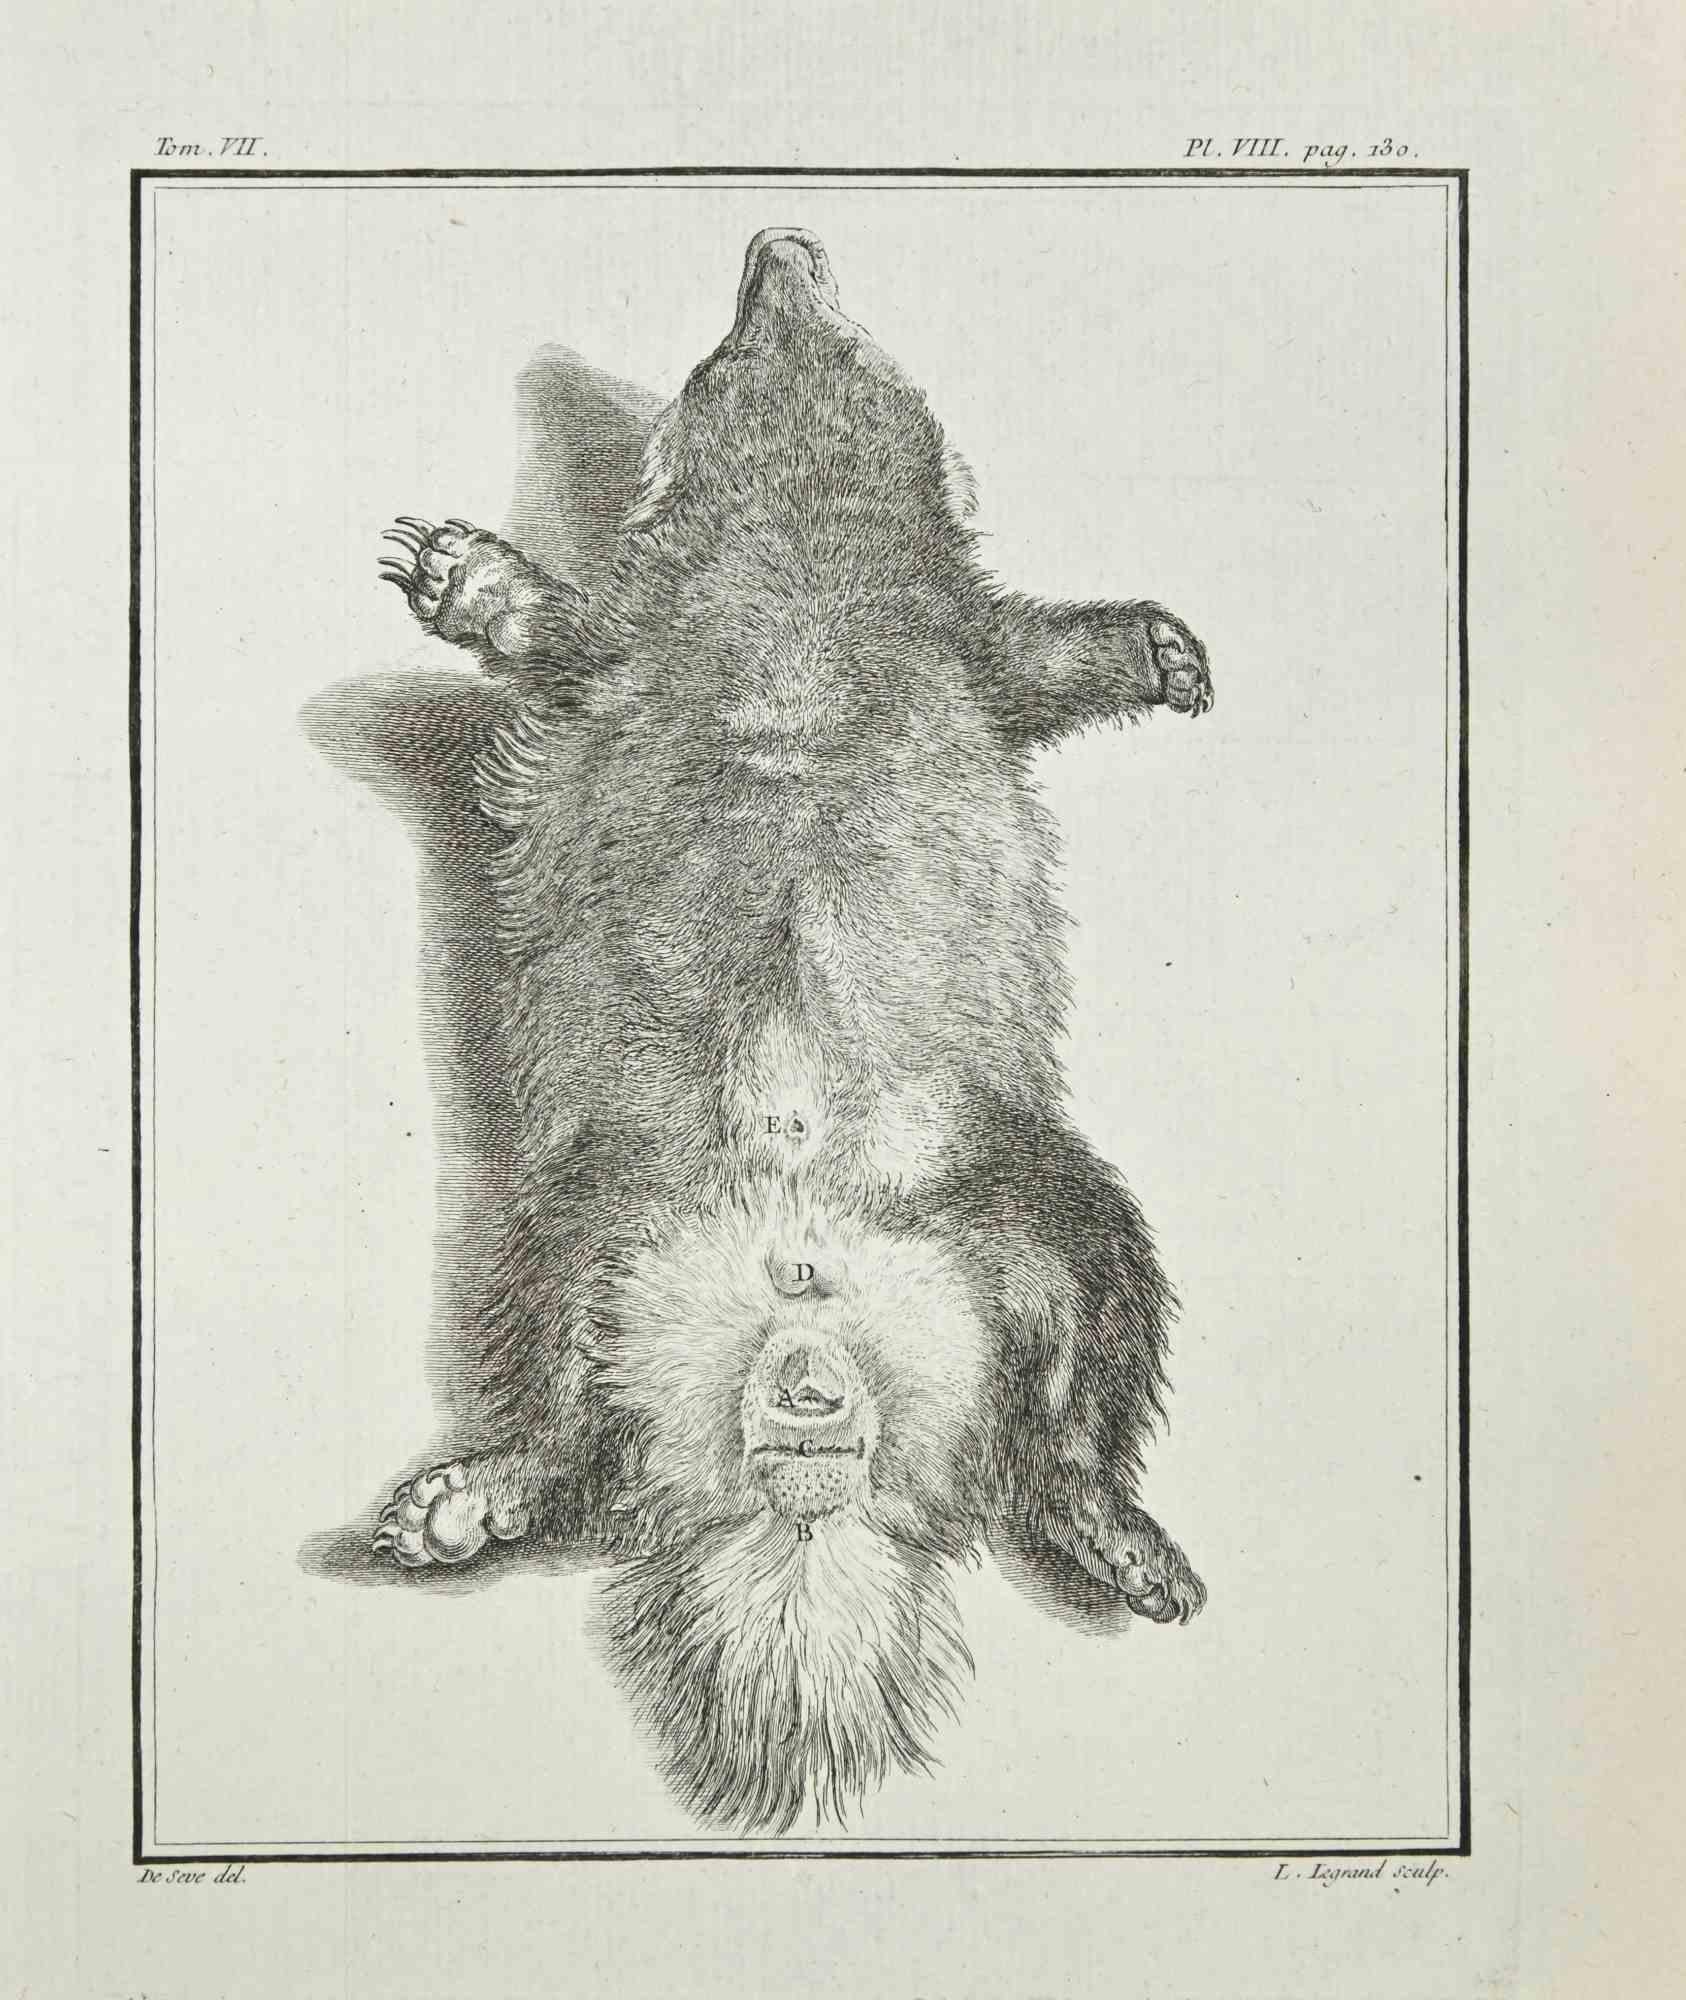 L'Anatomie des animaux est une eau-forte réalisée en 1771 par Louis Legrand (1723-1807).

Il appartient à la suite "Histoire naturelle, générale et particulière avec la description du Cabinet du Roi".

Signature de l'Artistics gravée en bas à